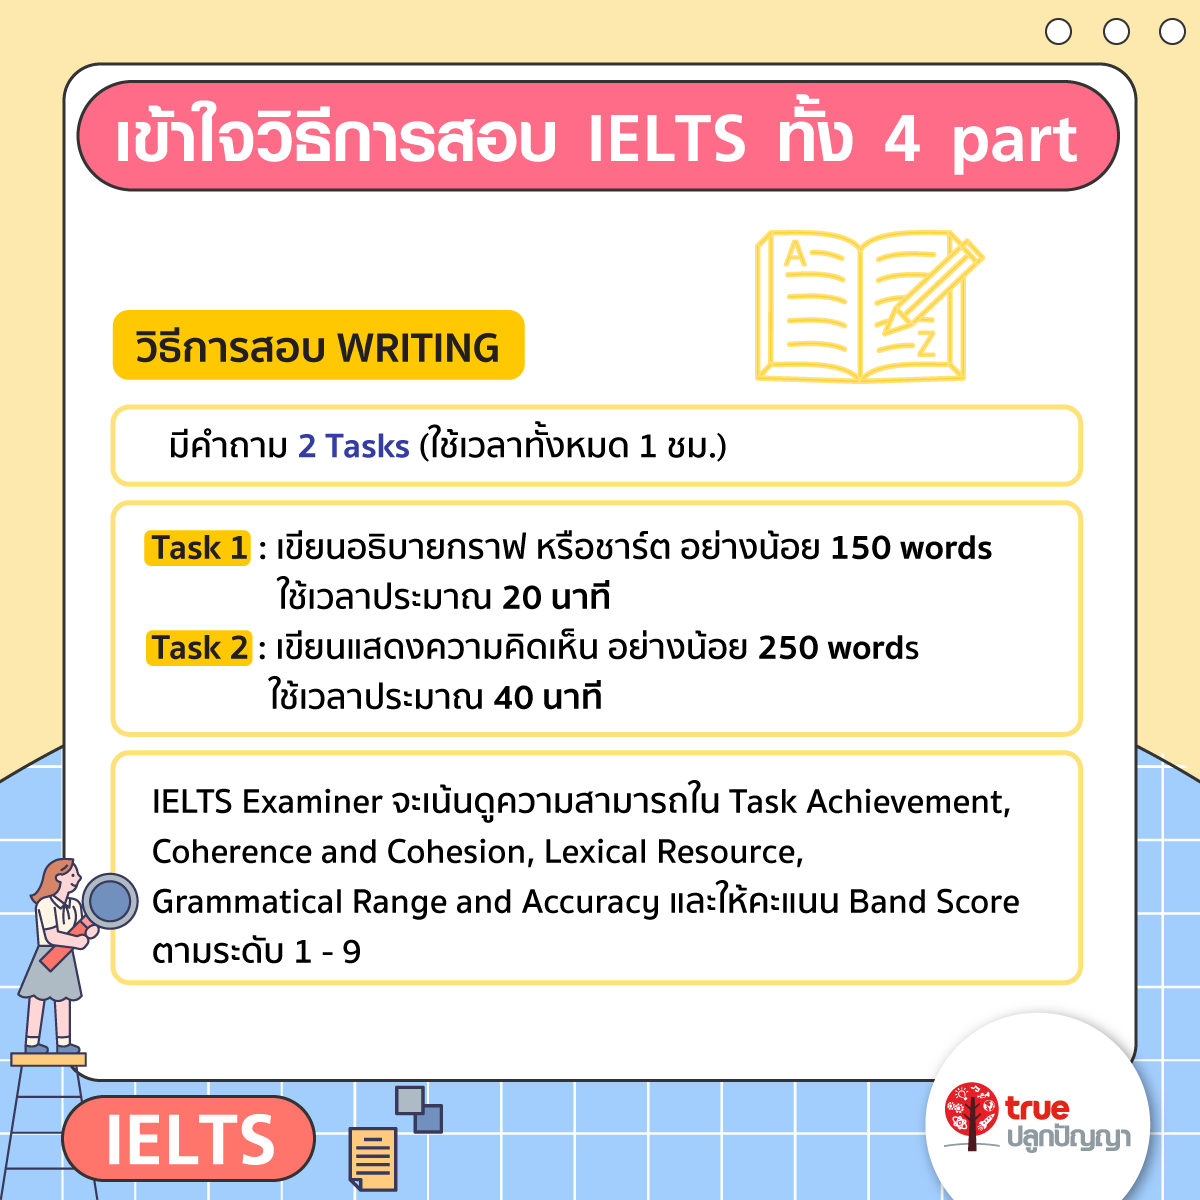 เข้าใจวิธีการสอบ IELTS ทั้ง 4 part